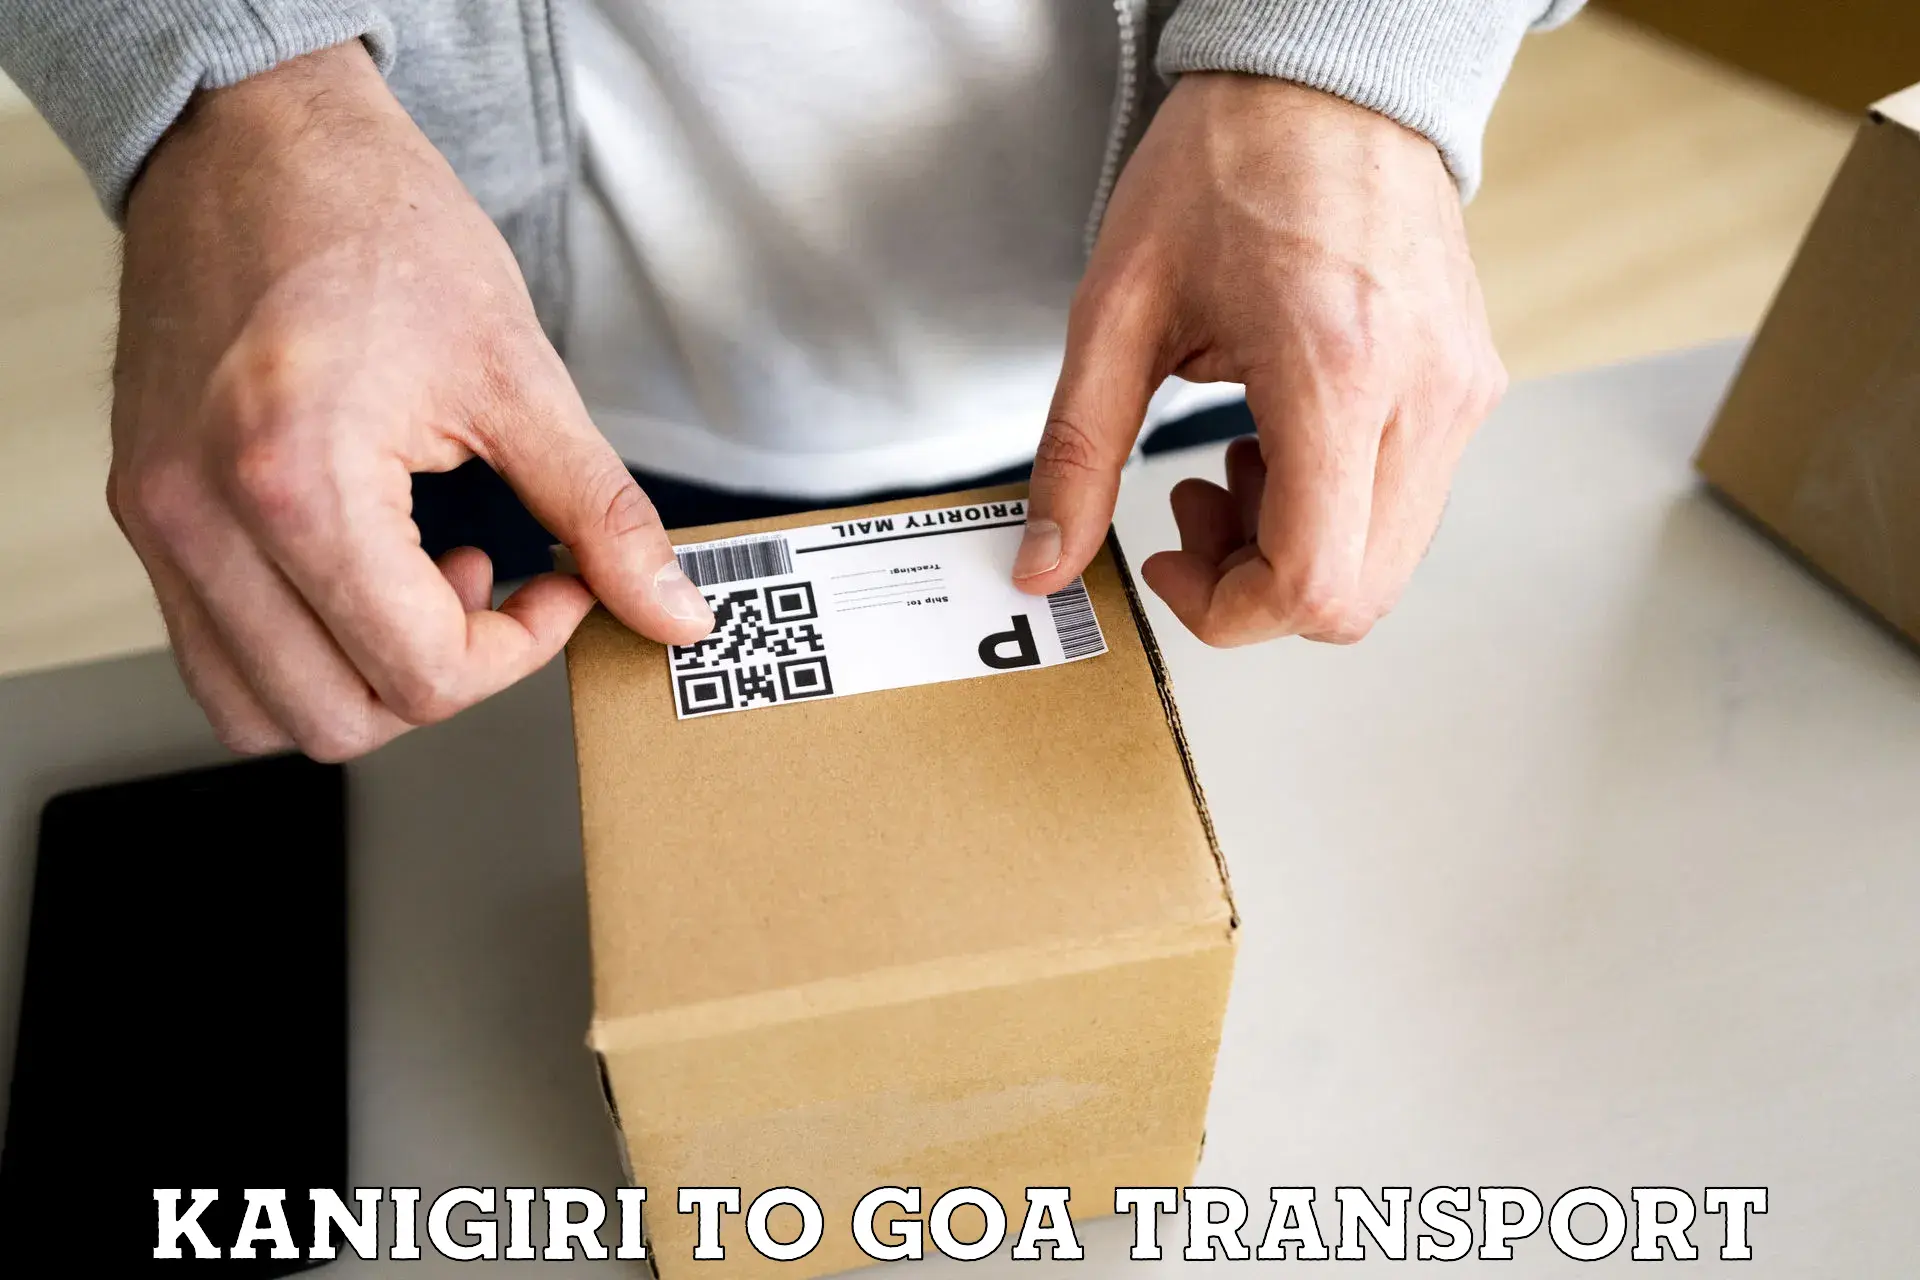 Express transport services Kanigiri to Goa